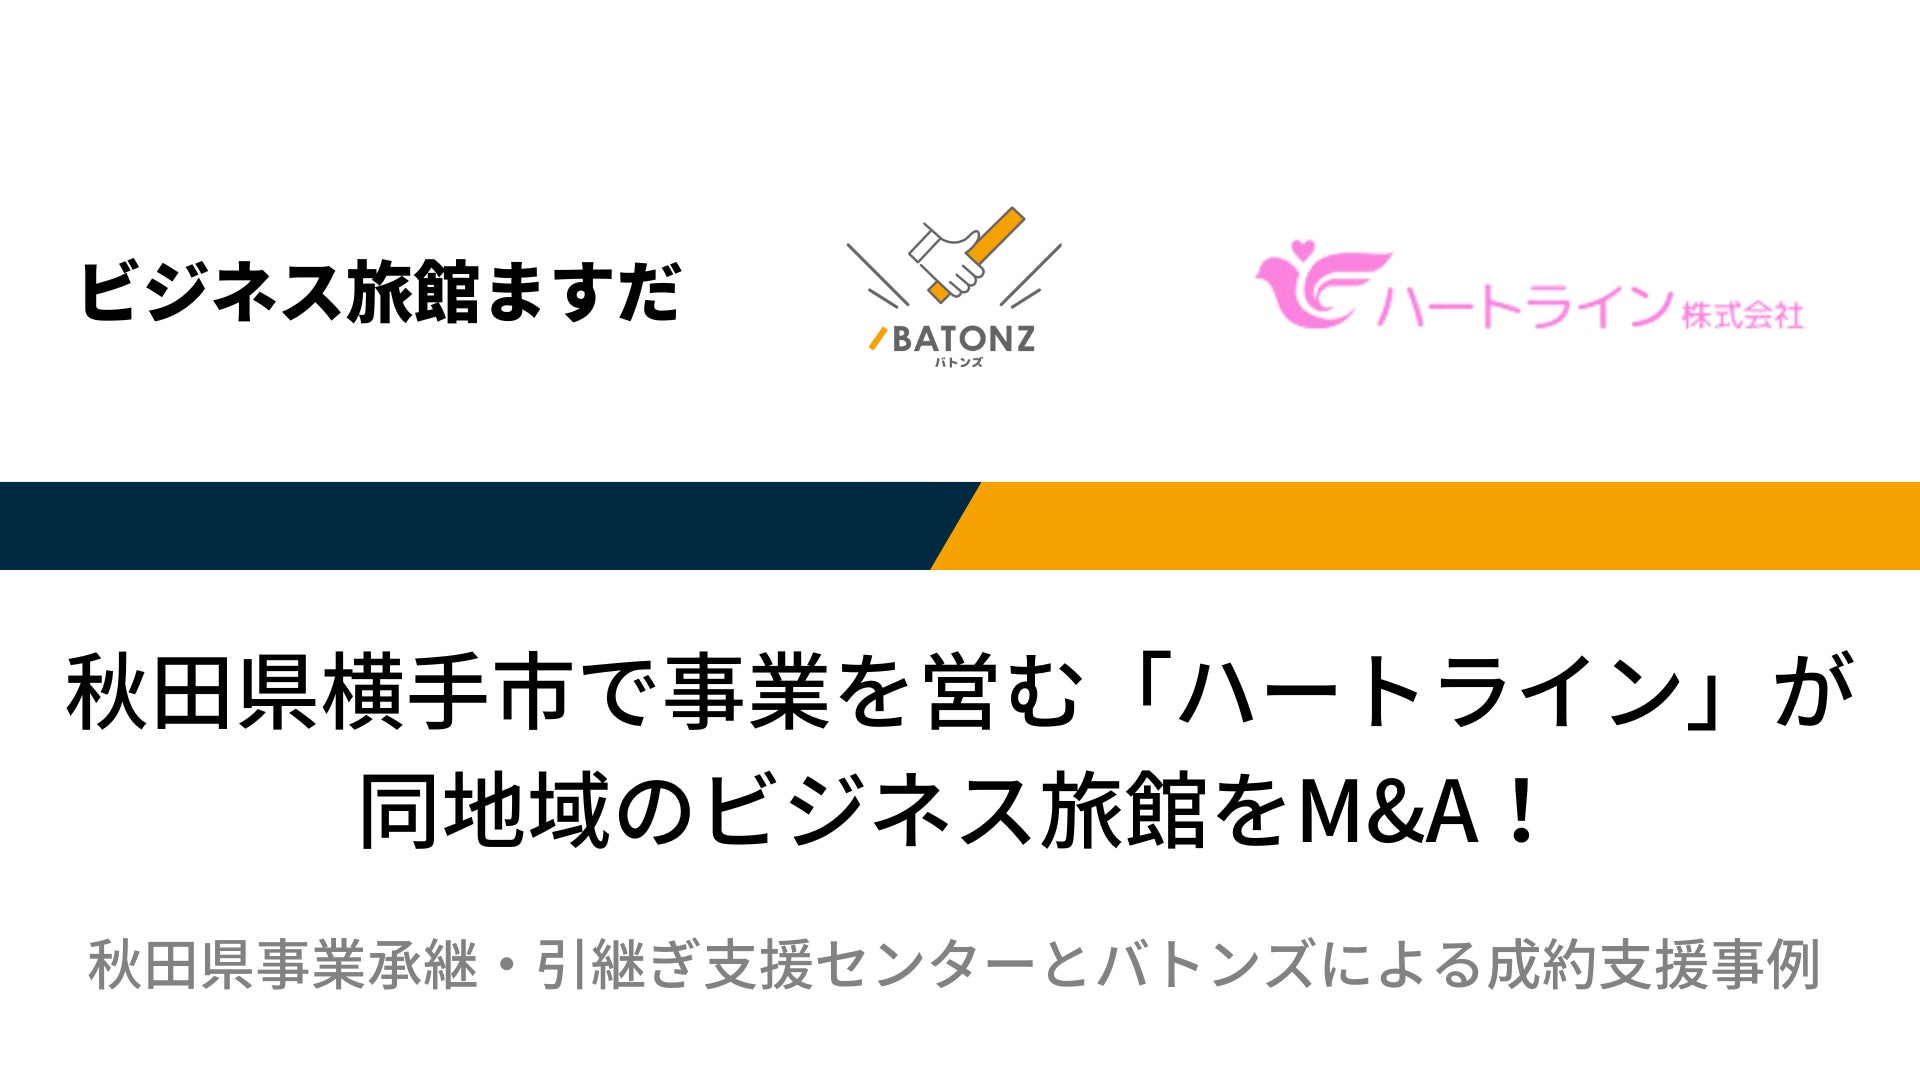 【バトンズ成約事例】秋田県横手市で事業を営む「ハートライン」が同地域のビジネス旅館をM&A！